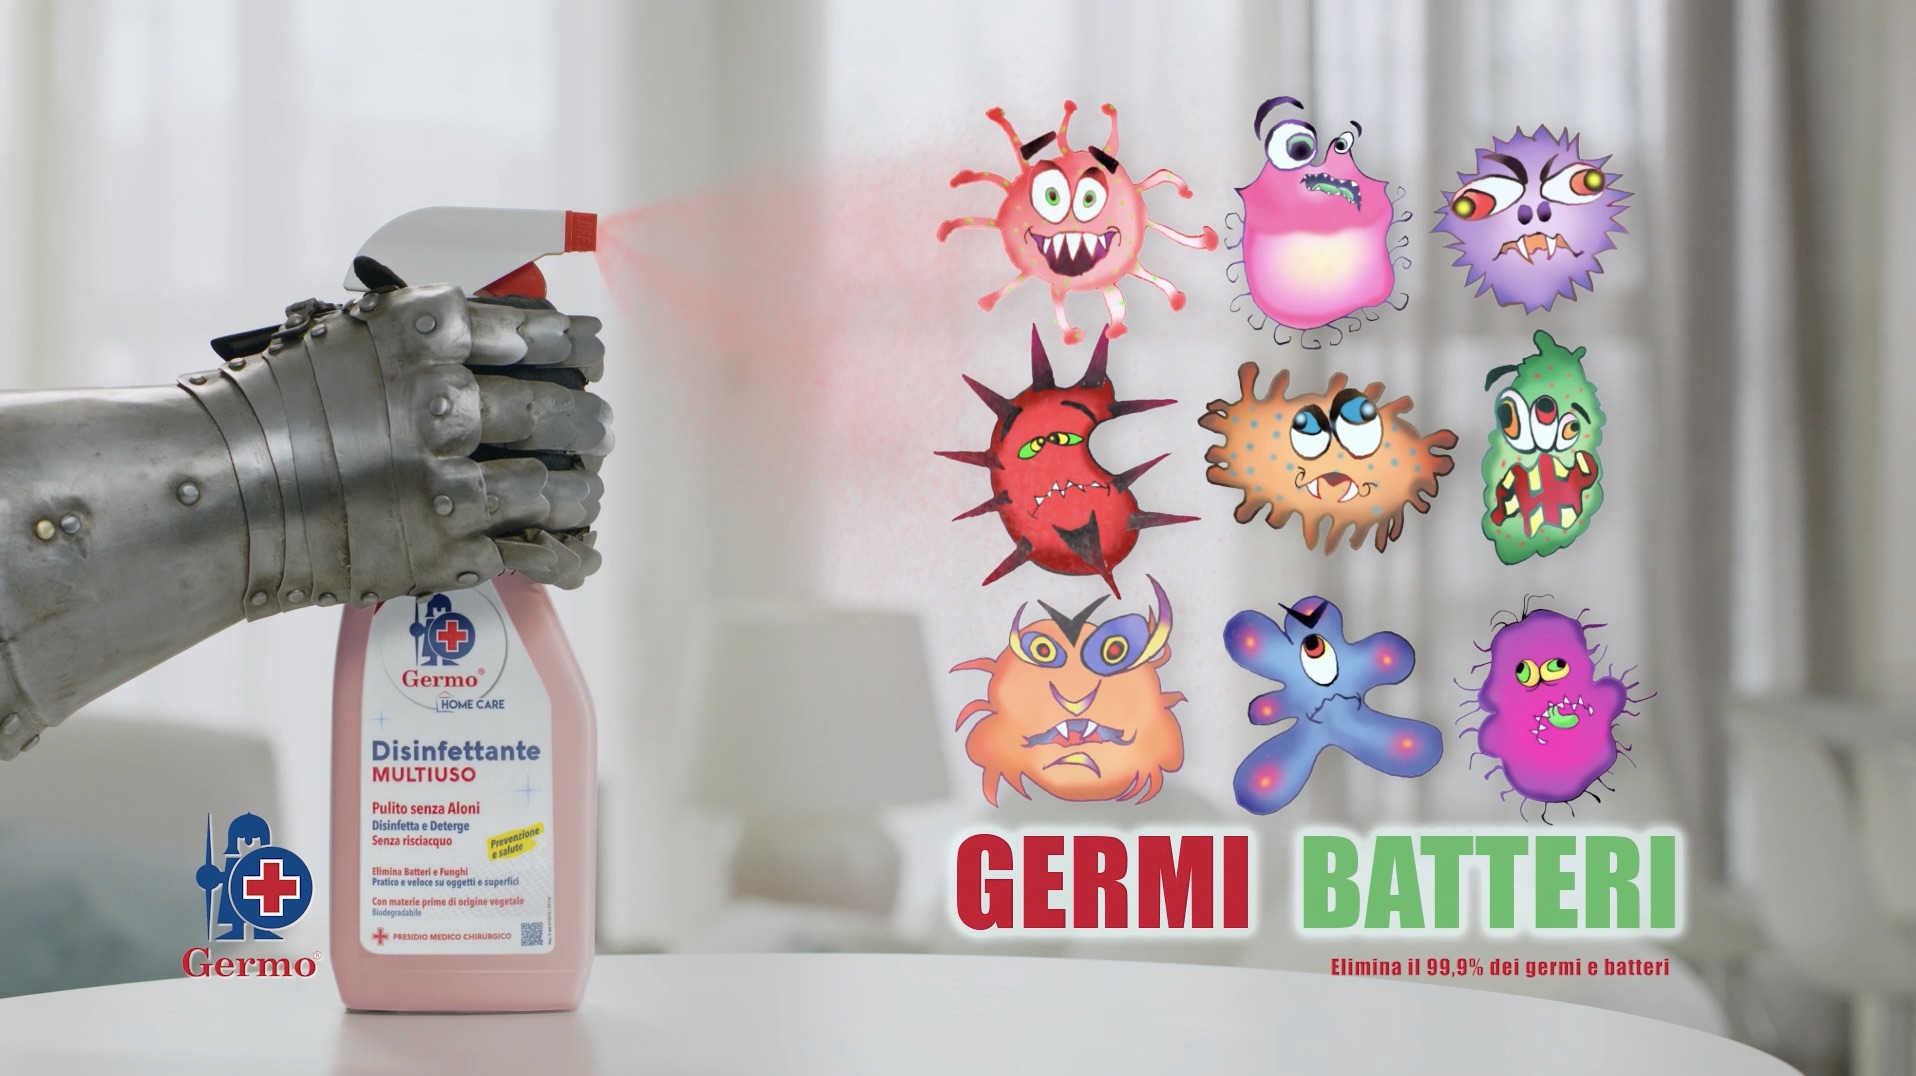 Igienizzare o disinfettare? Germo fa chiarezza nel nuovo spot dell’agenzia Sense Action prodotto da Bedeschifilm